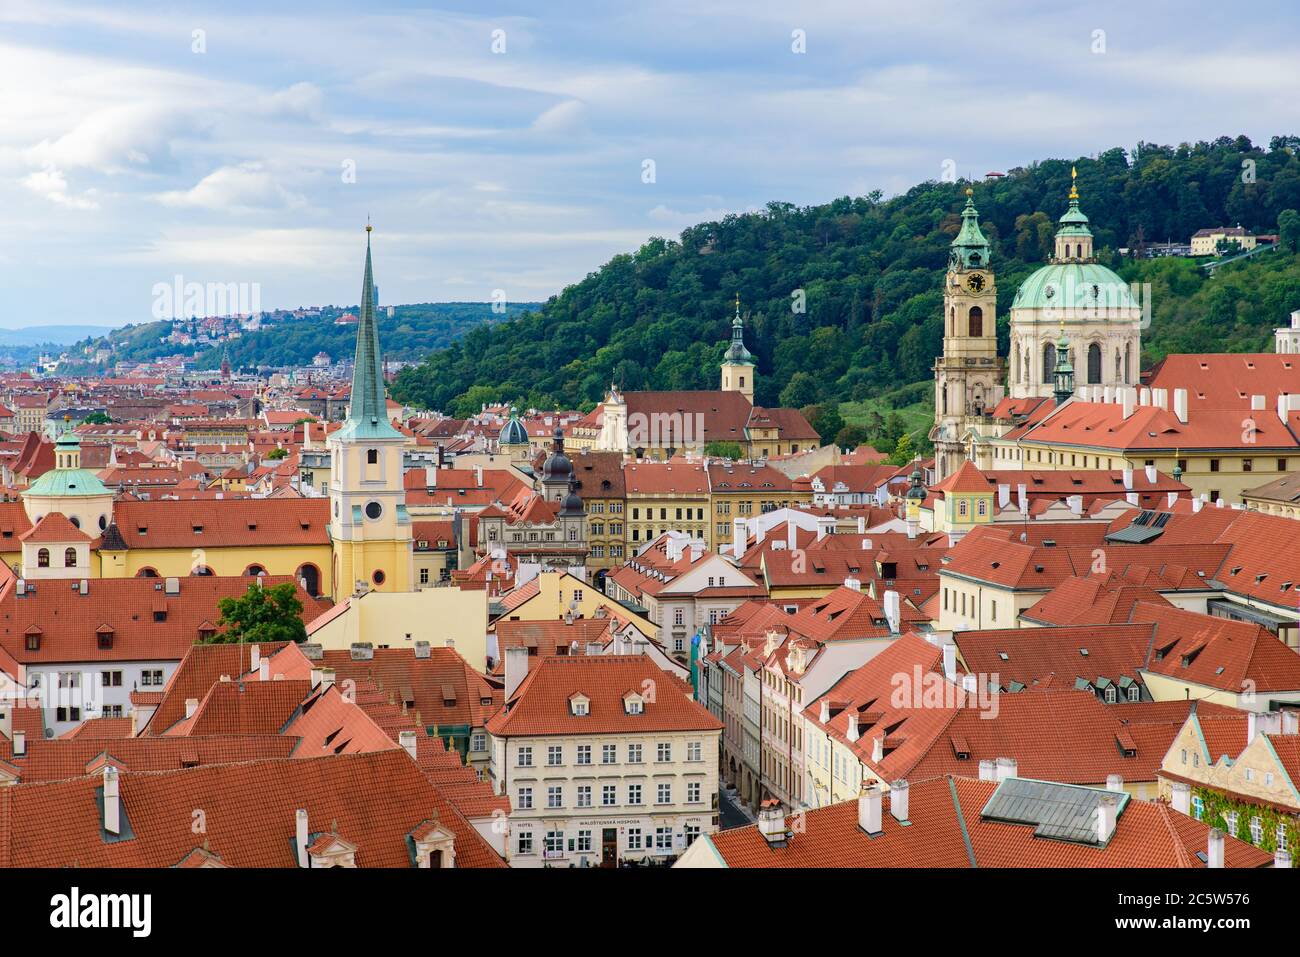 Vue sur les bâtiments traditionnels et la vieille ville de Prague, République tchèque Banque D'Images